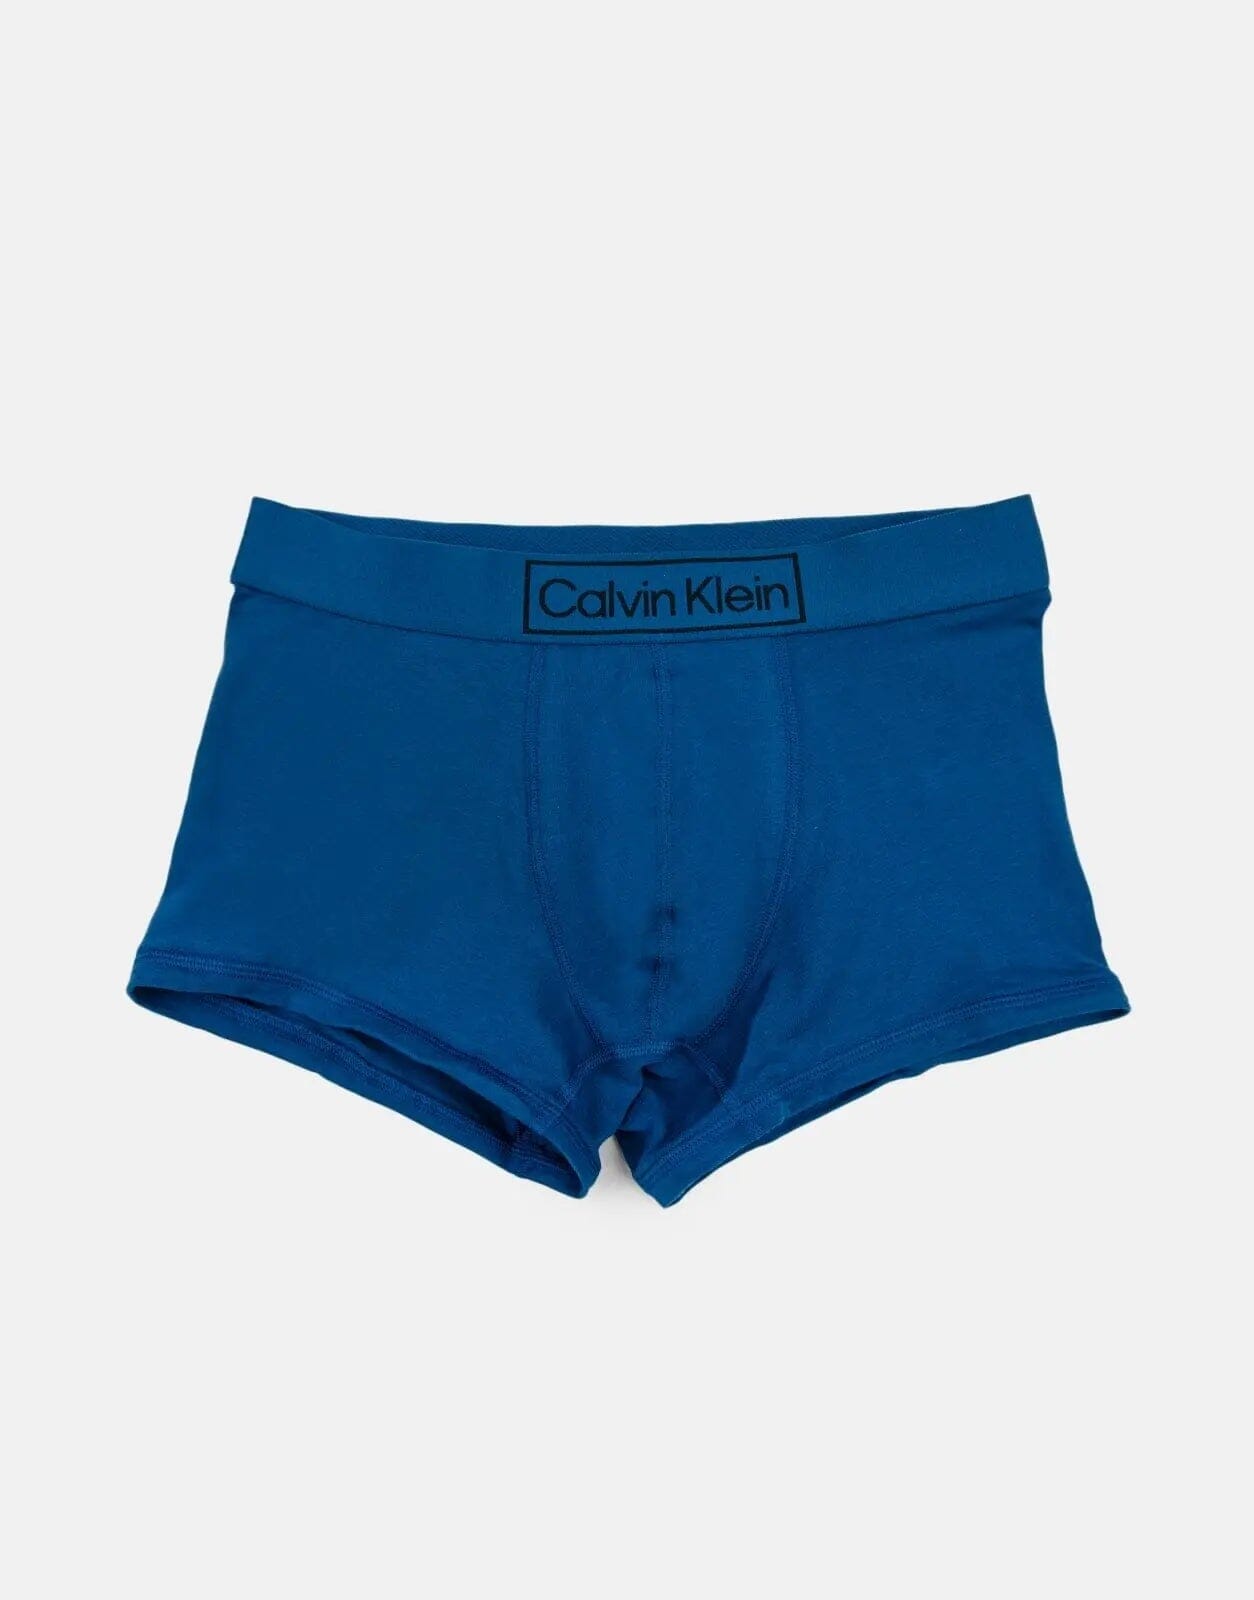 Calvin Klein Trunk Blue Underwear - Subwear